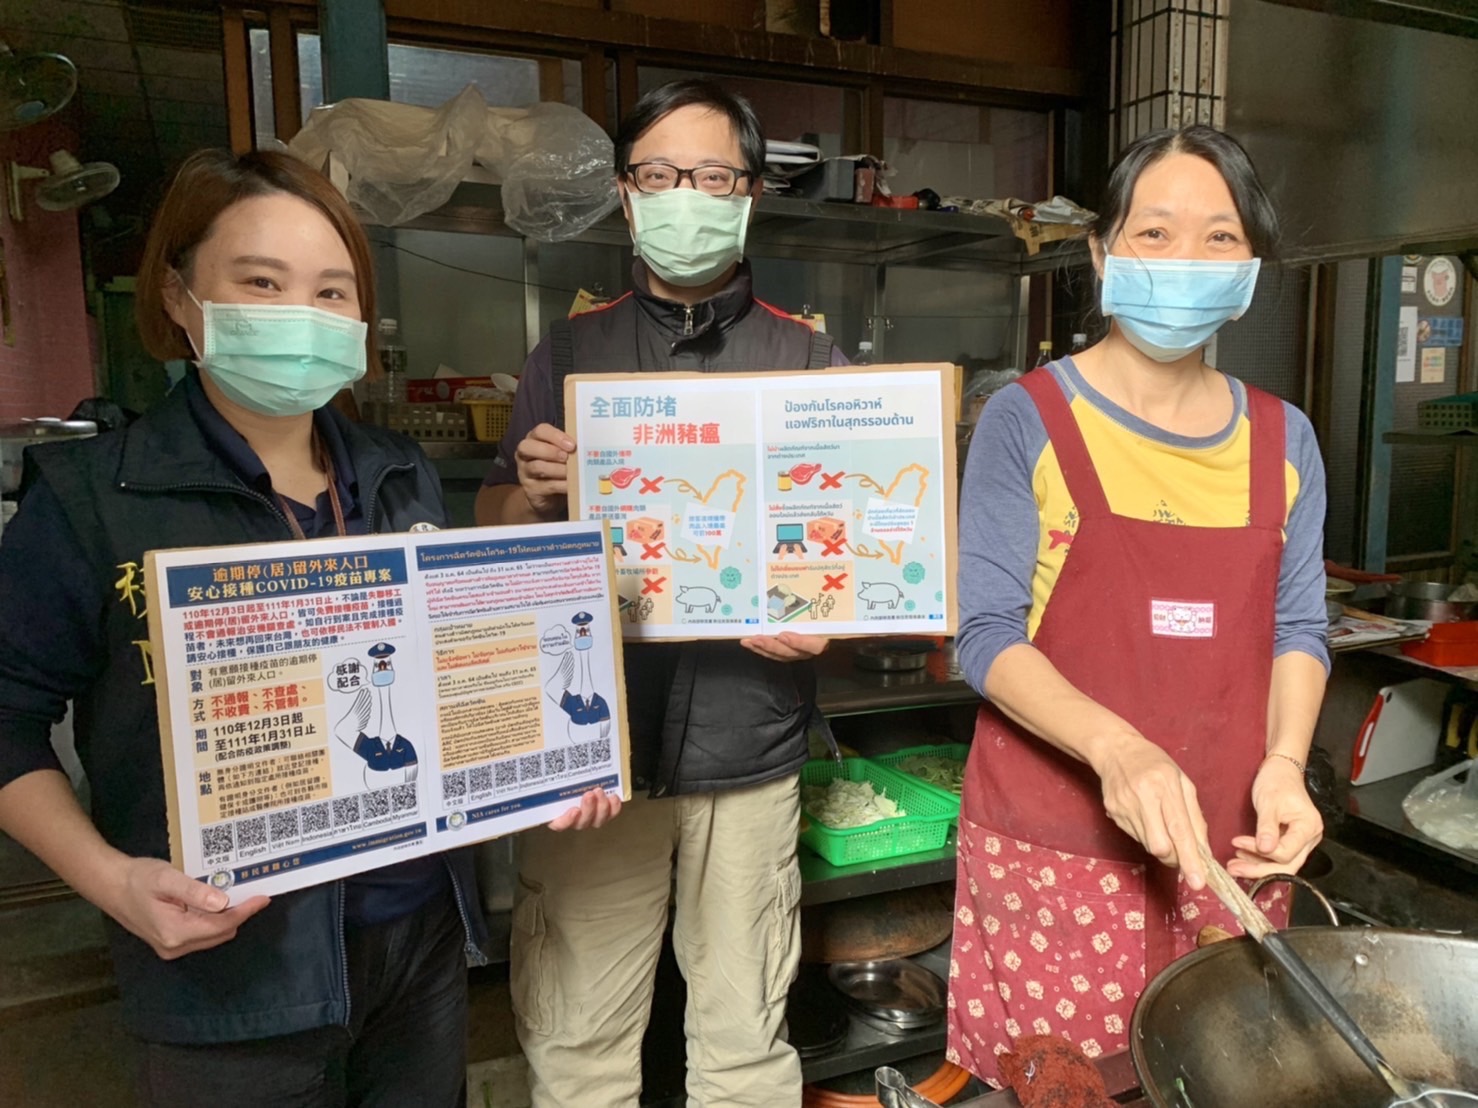 Tim Tugas Kota Kaohsiung mengunjungi para pedagang untuk memberikan informasi terkait flu babi. Pemilik restoran Thailand memuji upaya pencegahan wabah di Taiwan sangat kuat, membuat semua masyarakat tenang. (Sumber: Tim Tugas Khusus Kota Kaohsiung/高雄市專勤隊)